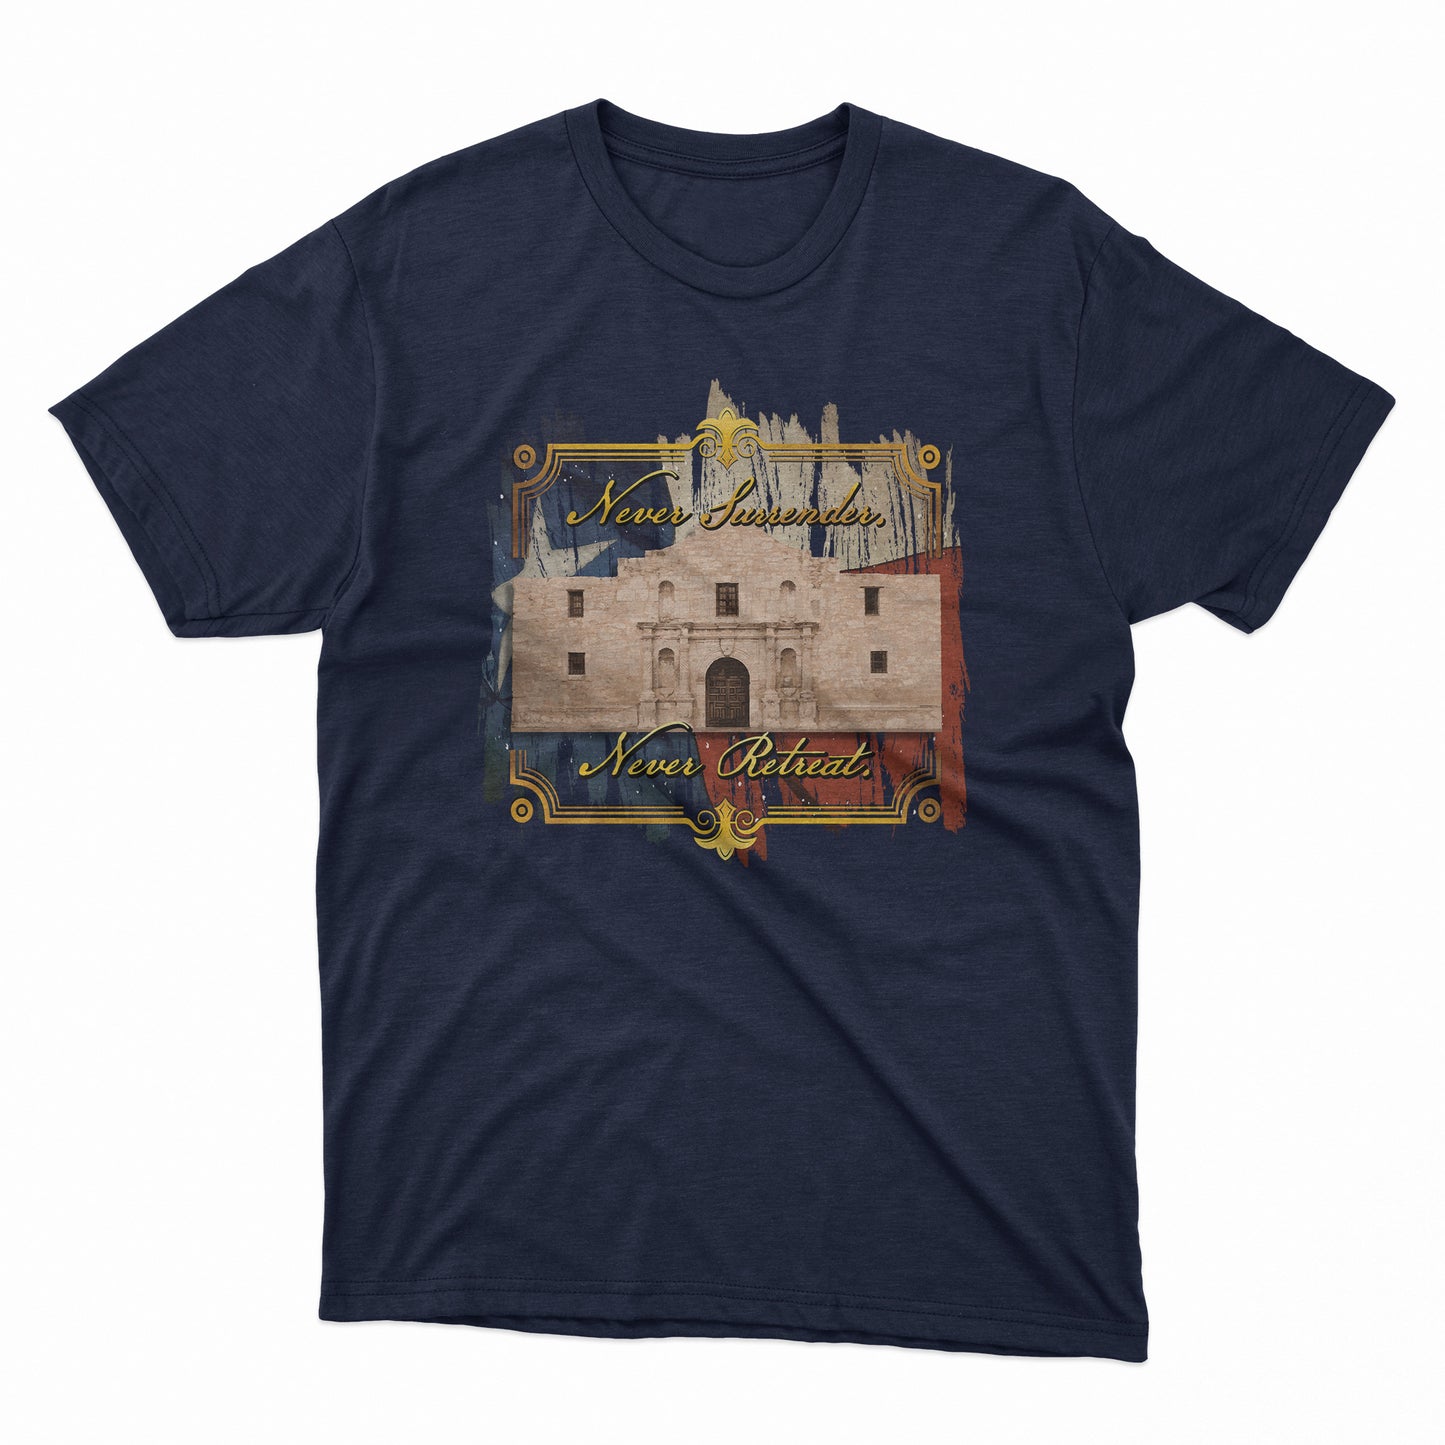 Remember the Alamo Shirt